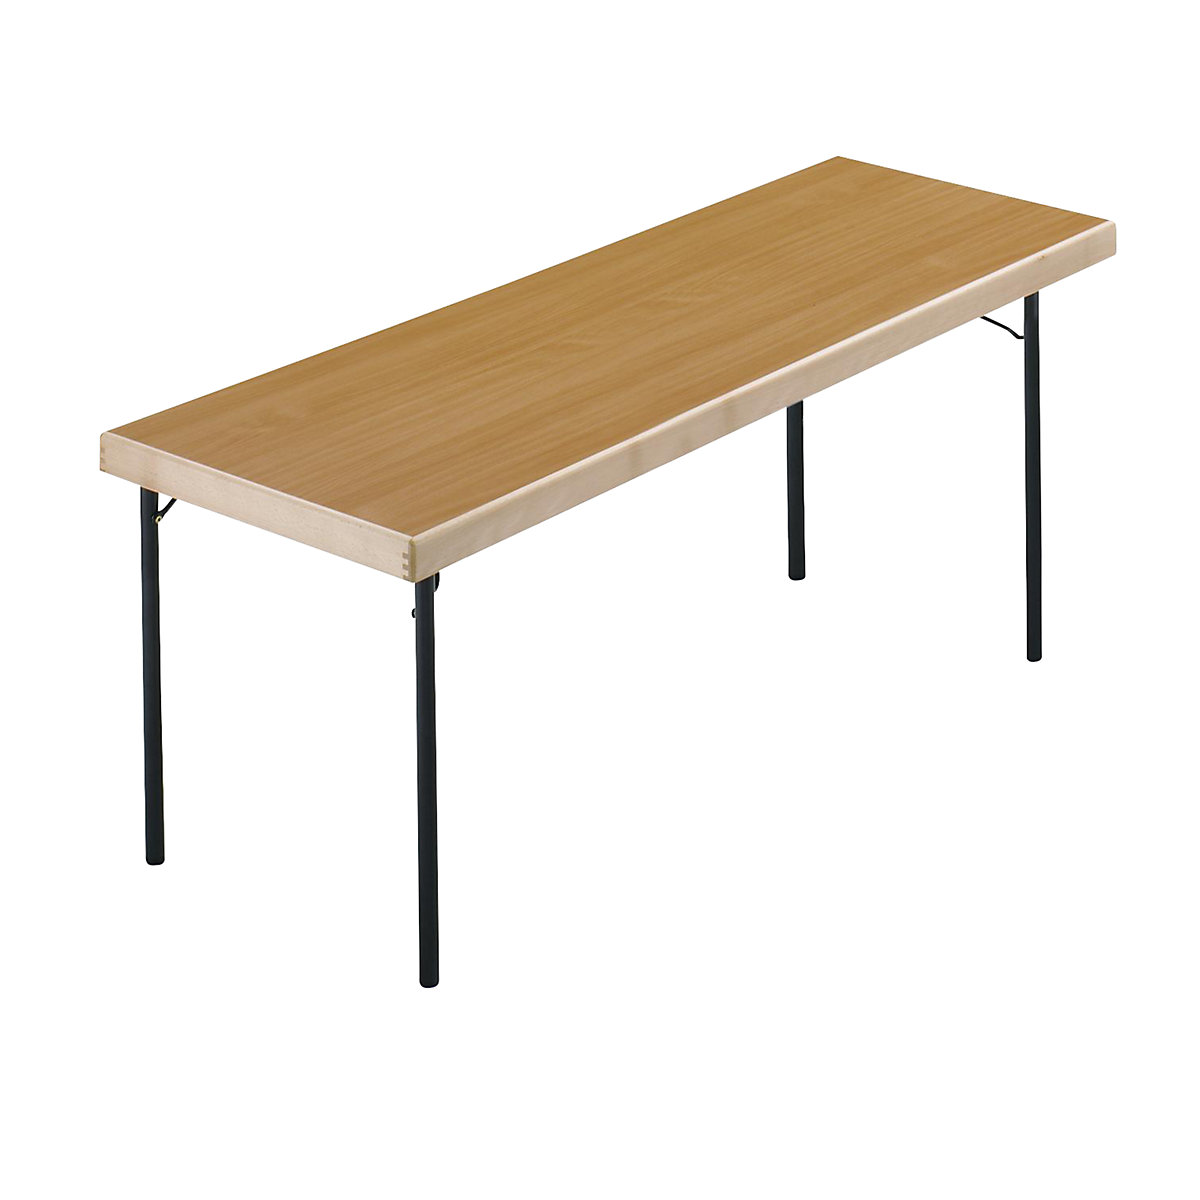 Sklápací stôl, podstavec so 4 nohami, 1700 x 700 mm, podstavec antracitová, doska vzor buk-14